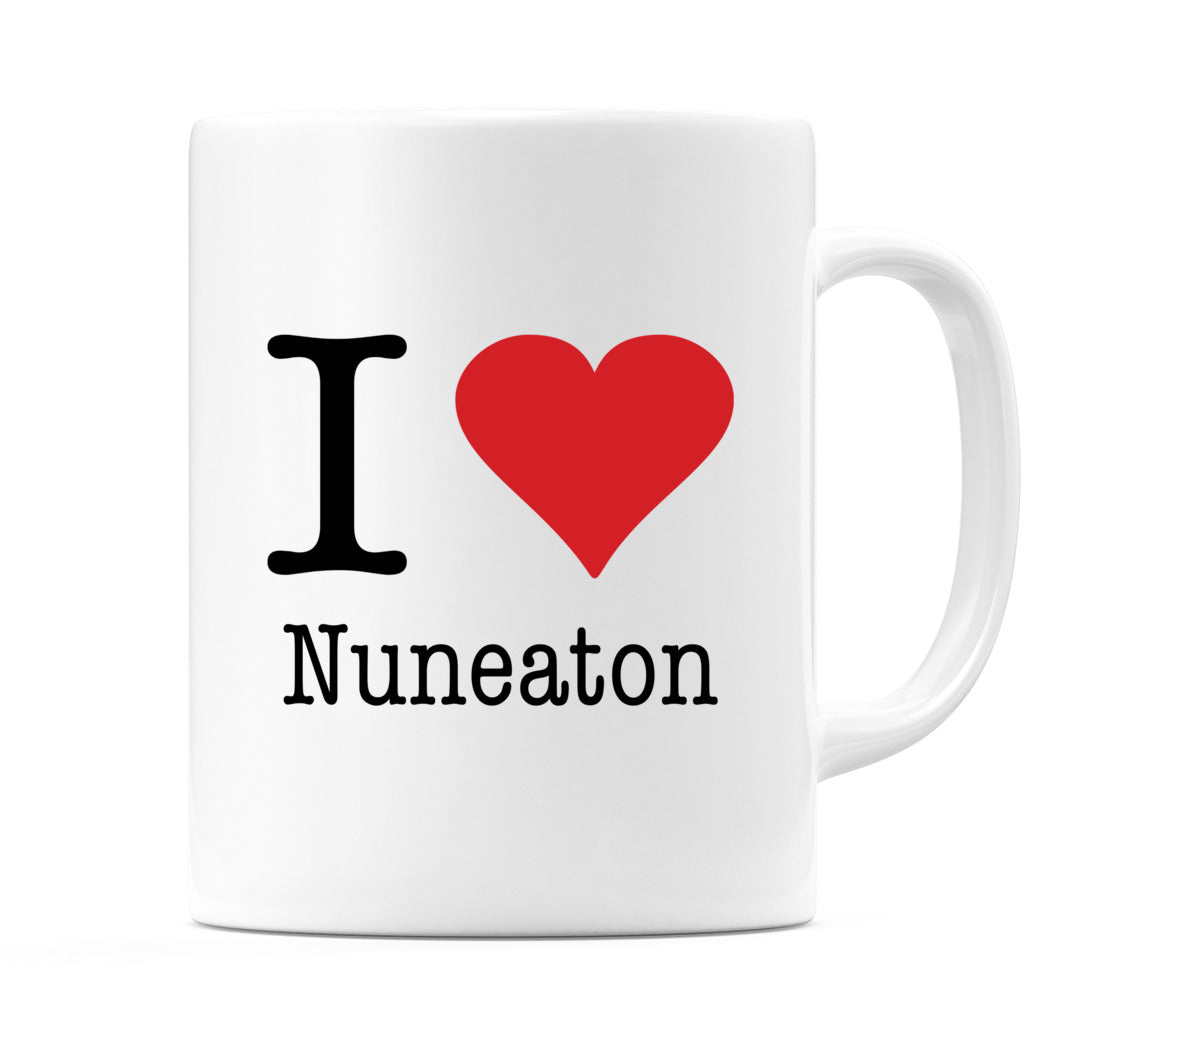 I Love Nuneaton Mug